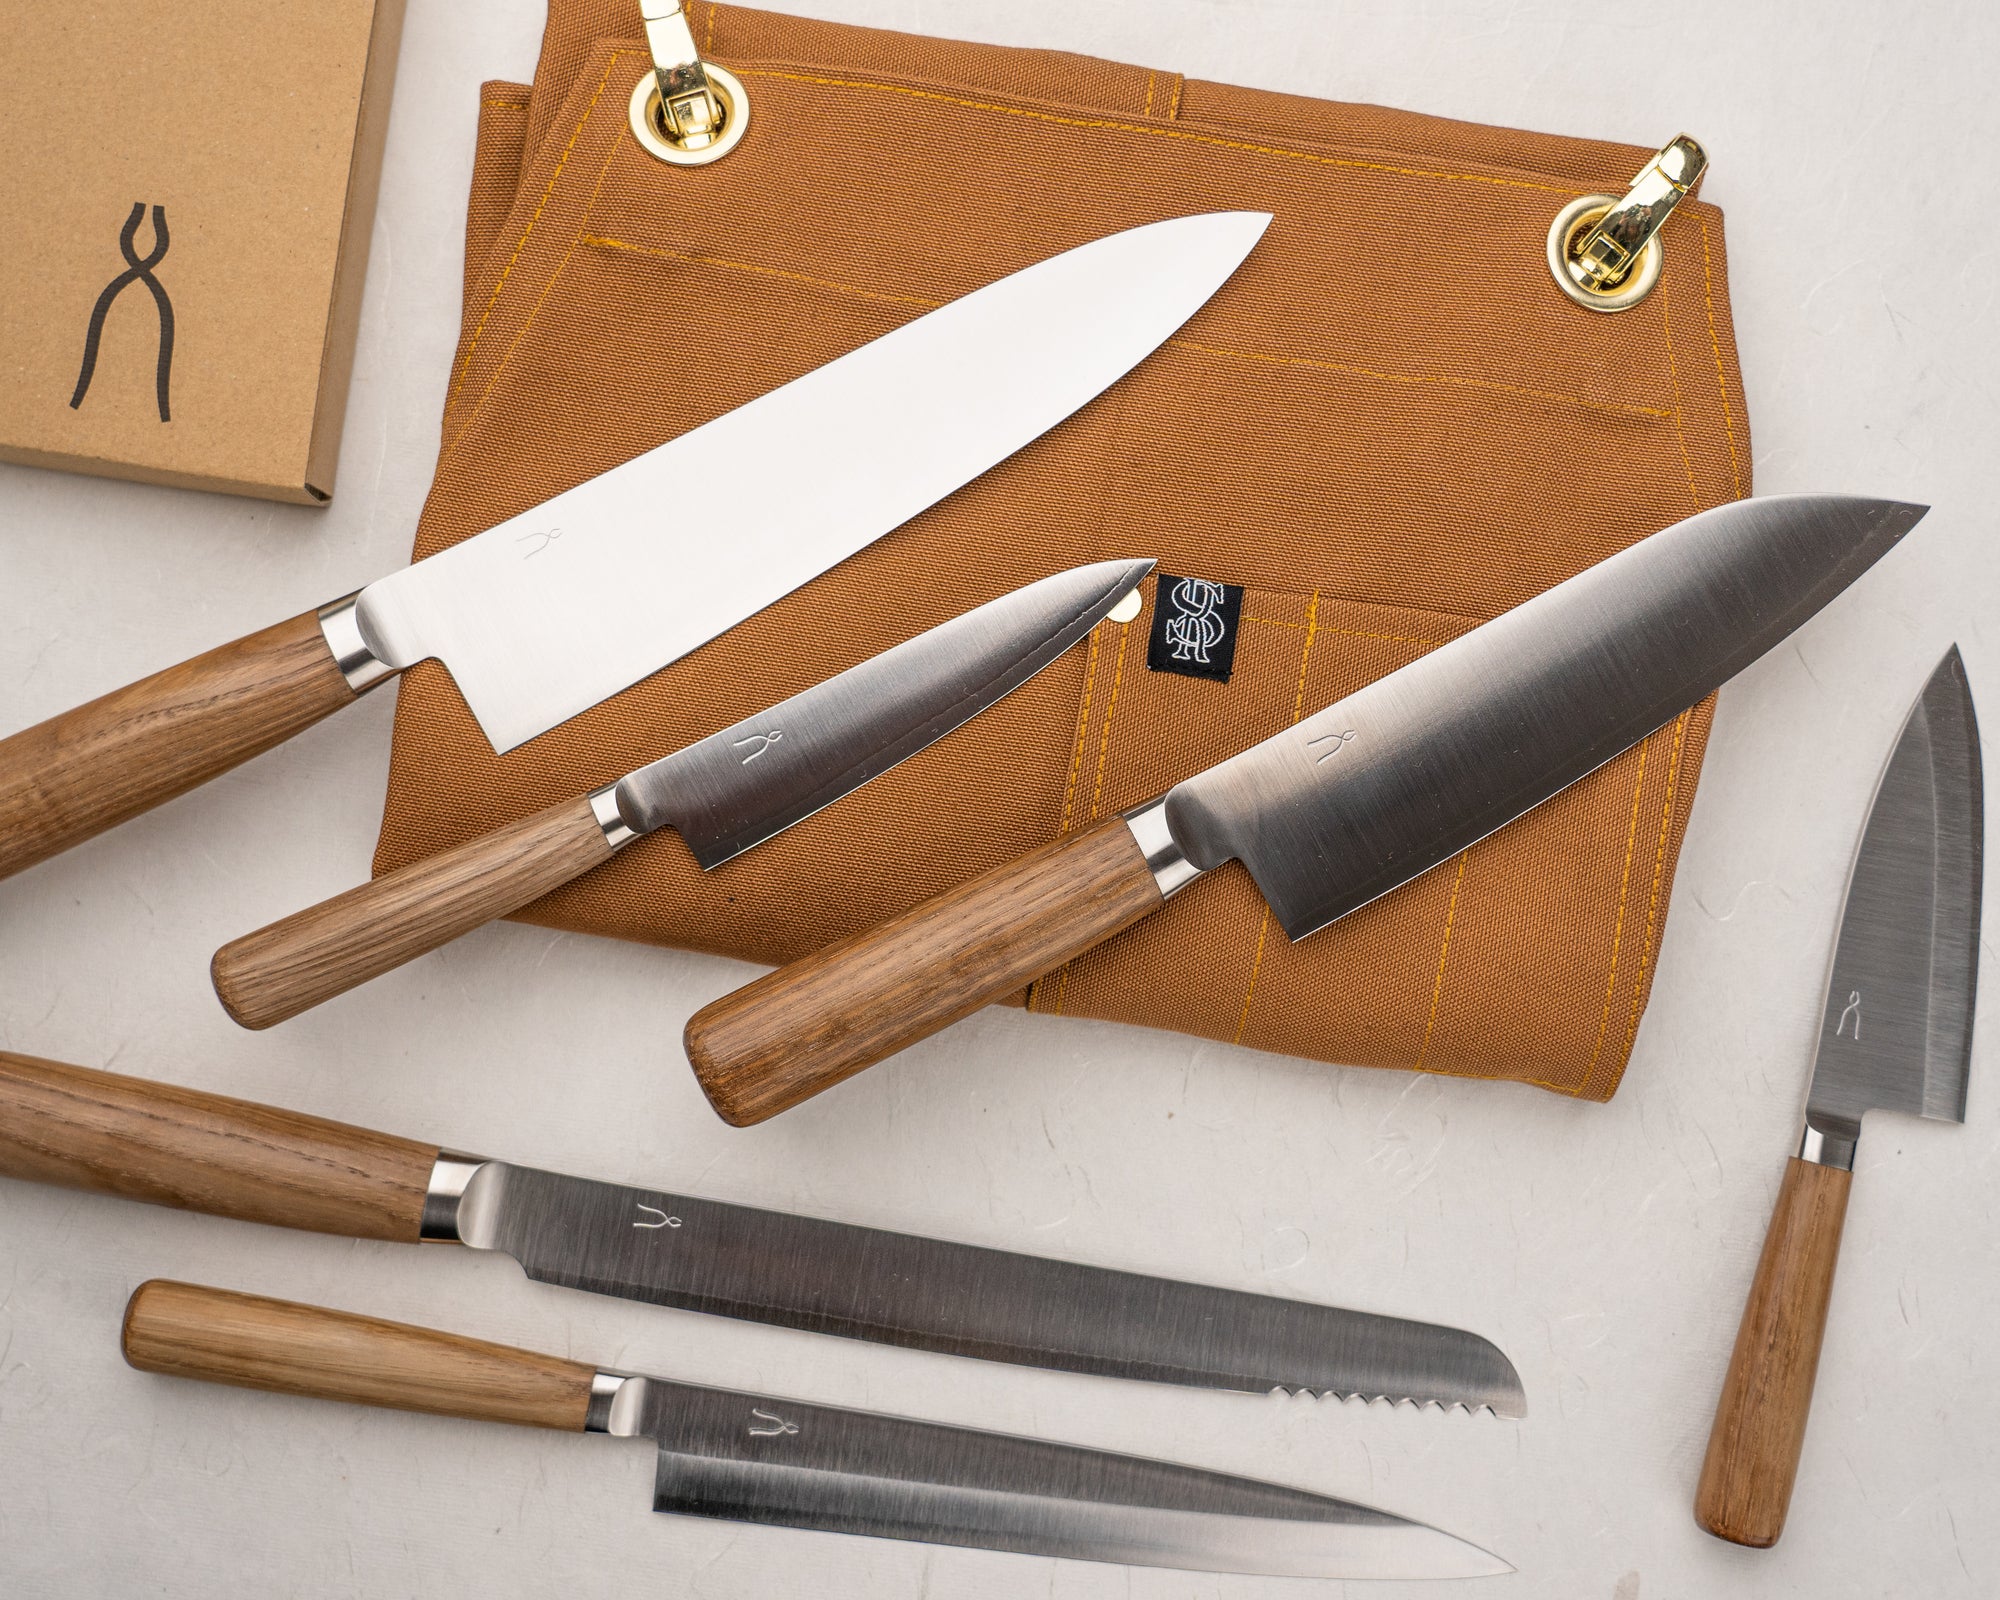 The Tadafusa Hocho-Kobo - The Best Beginner Japanese Knife Set